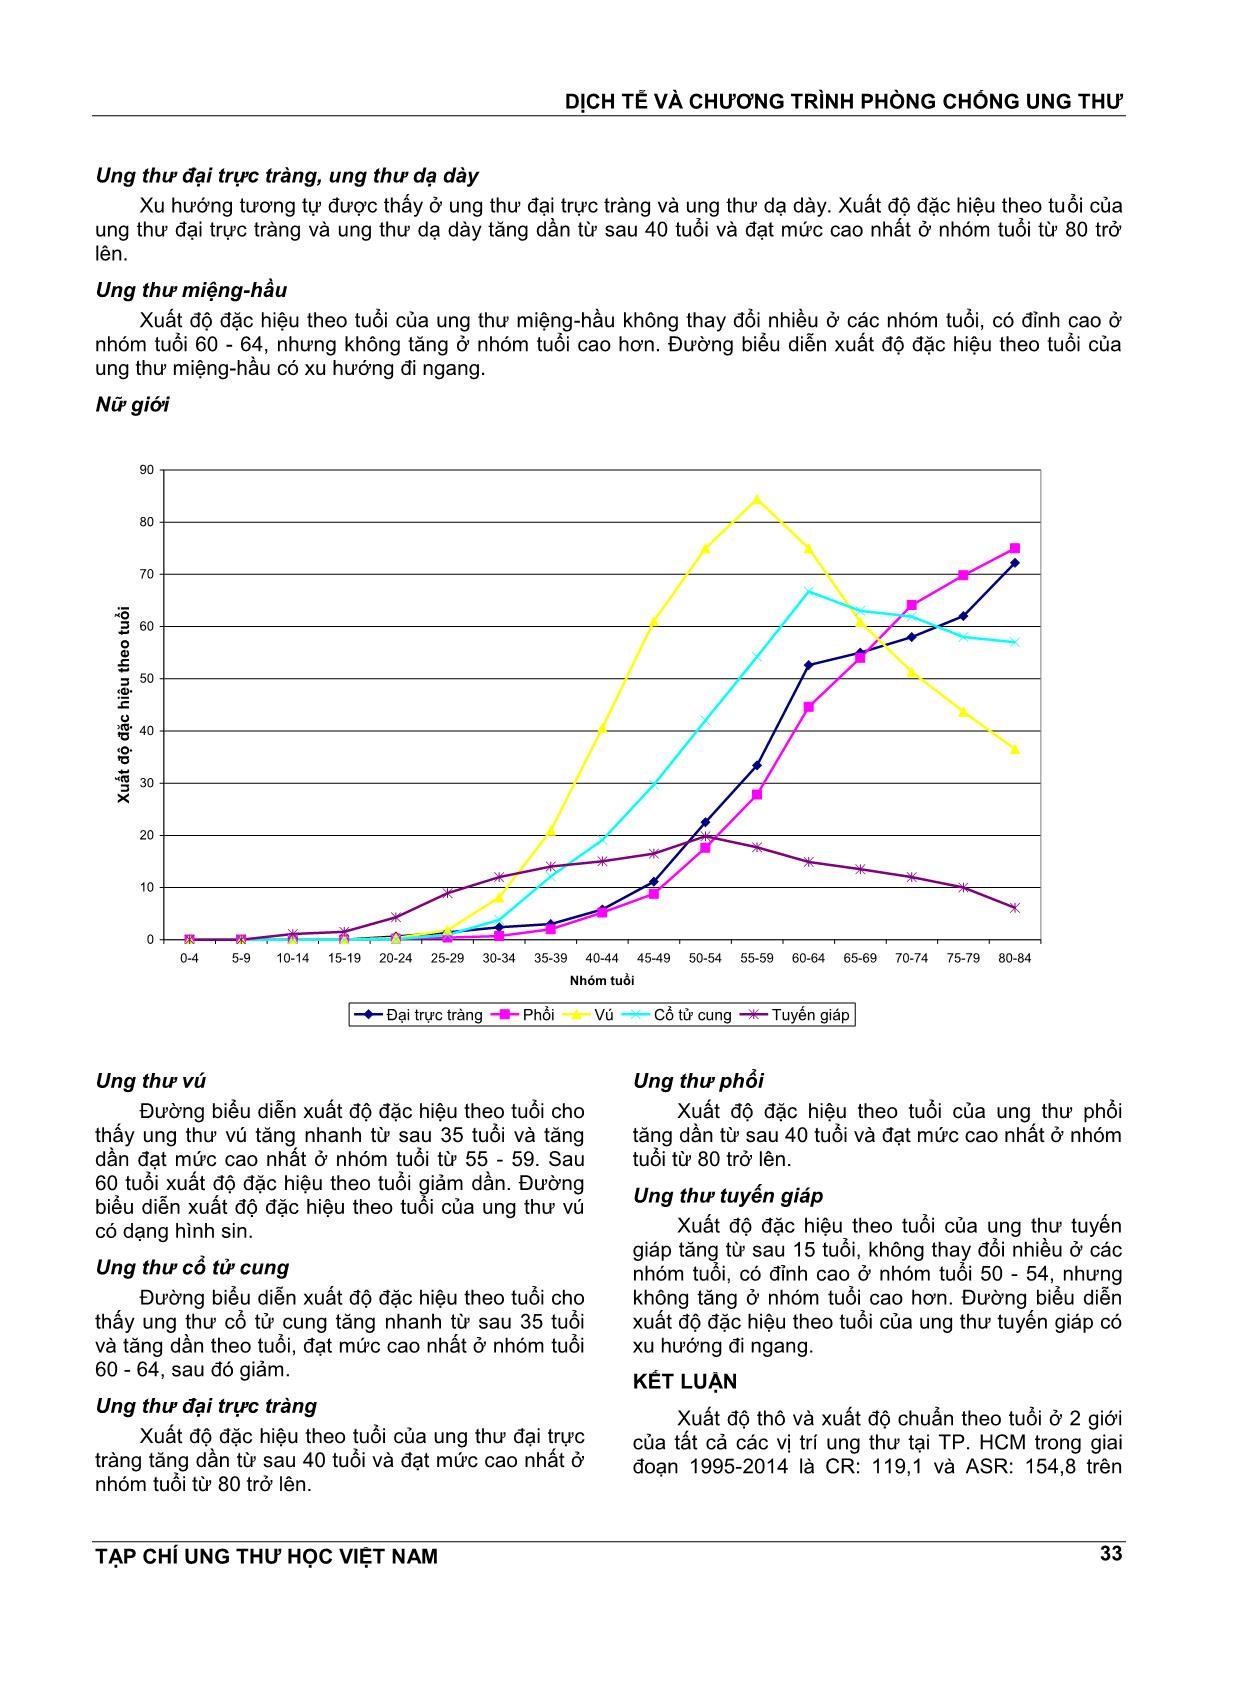 Kết quả ghi nhận ung thư quần thể thành phố Hồ Chí Minh 1995 - 2014 trang 8